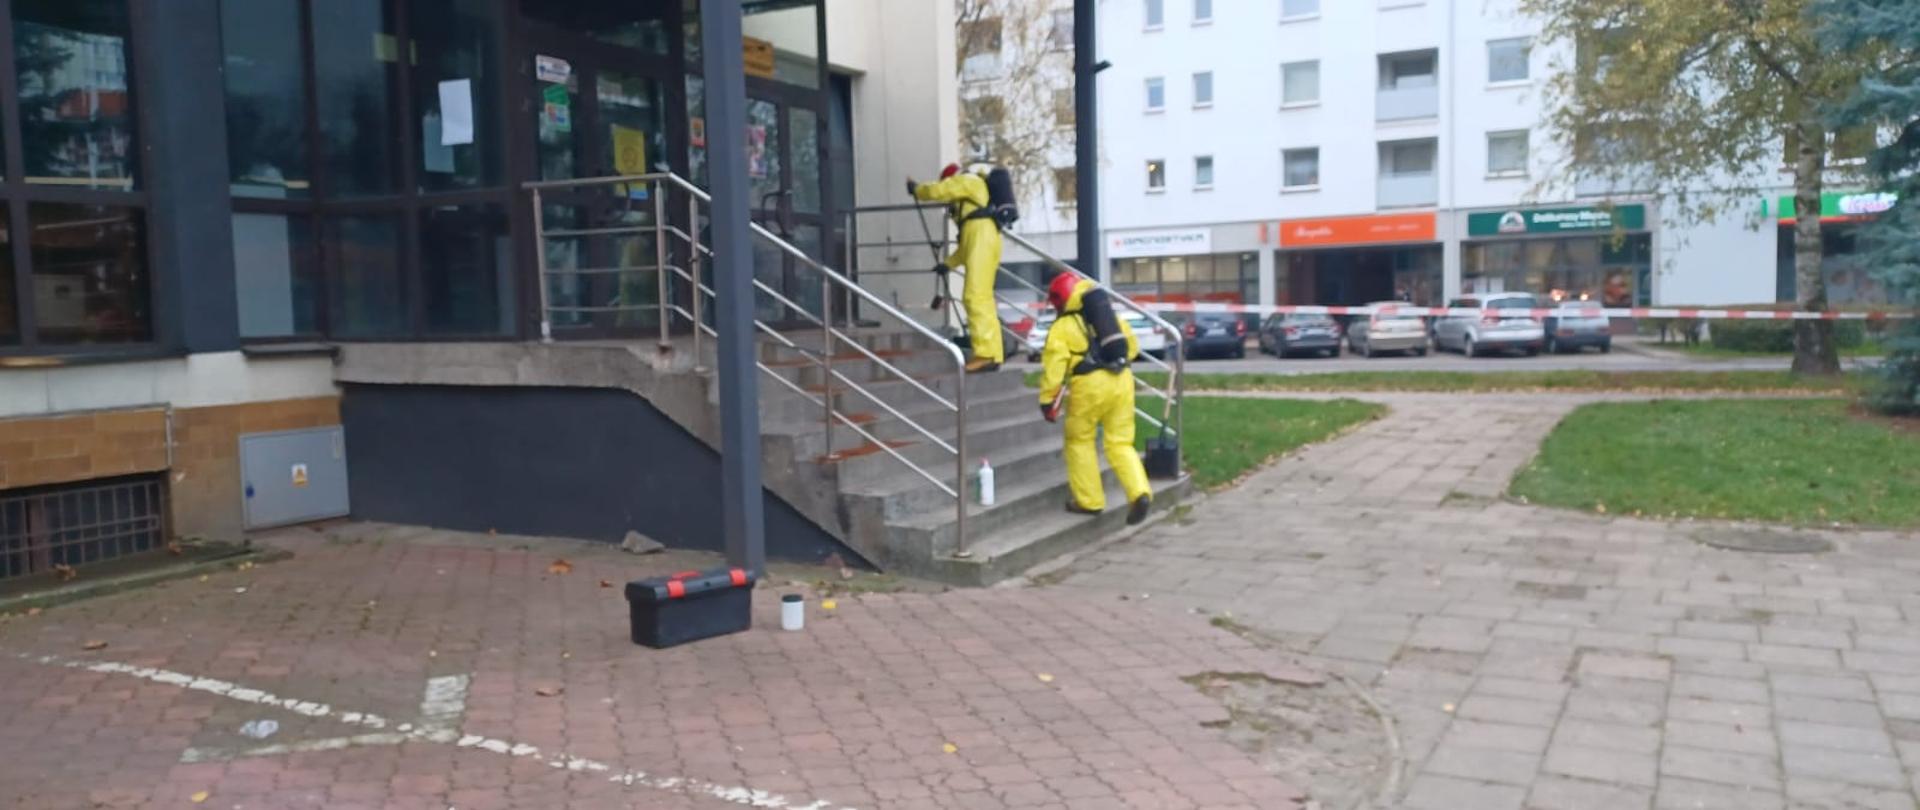 Na zdjęciu widać dwóch strażaków zabezpieczonych w ubrania przeciwchemiczne którzy pobierają próbkę substancji.